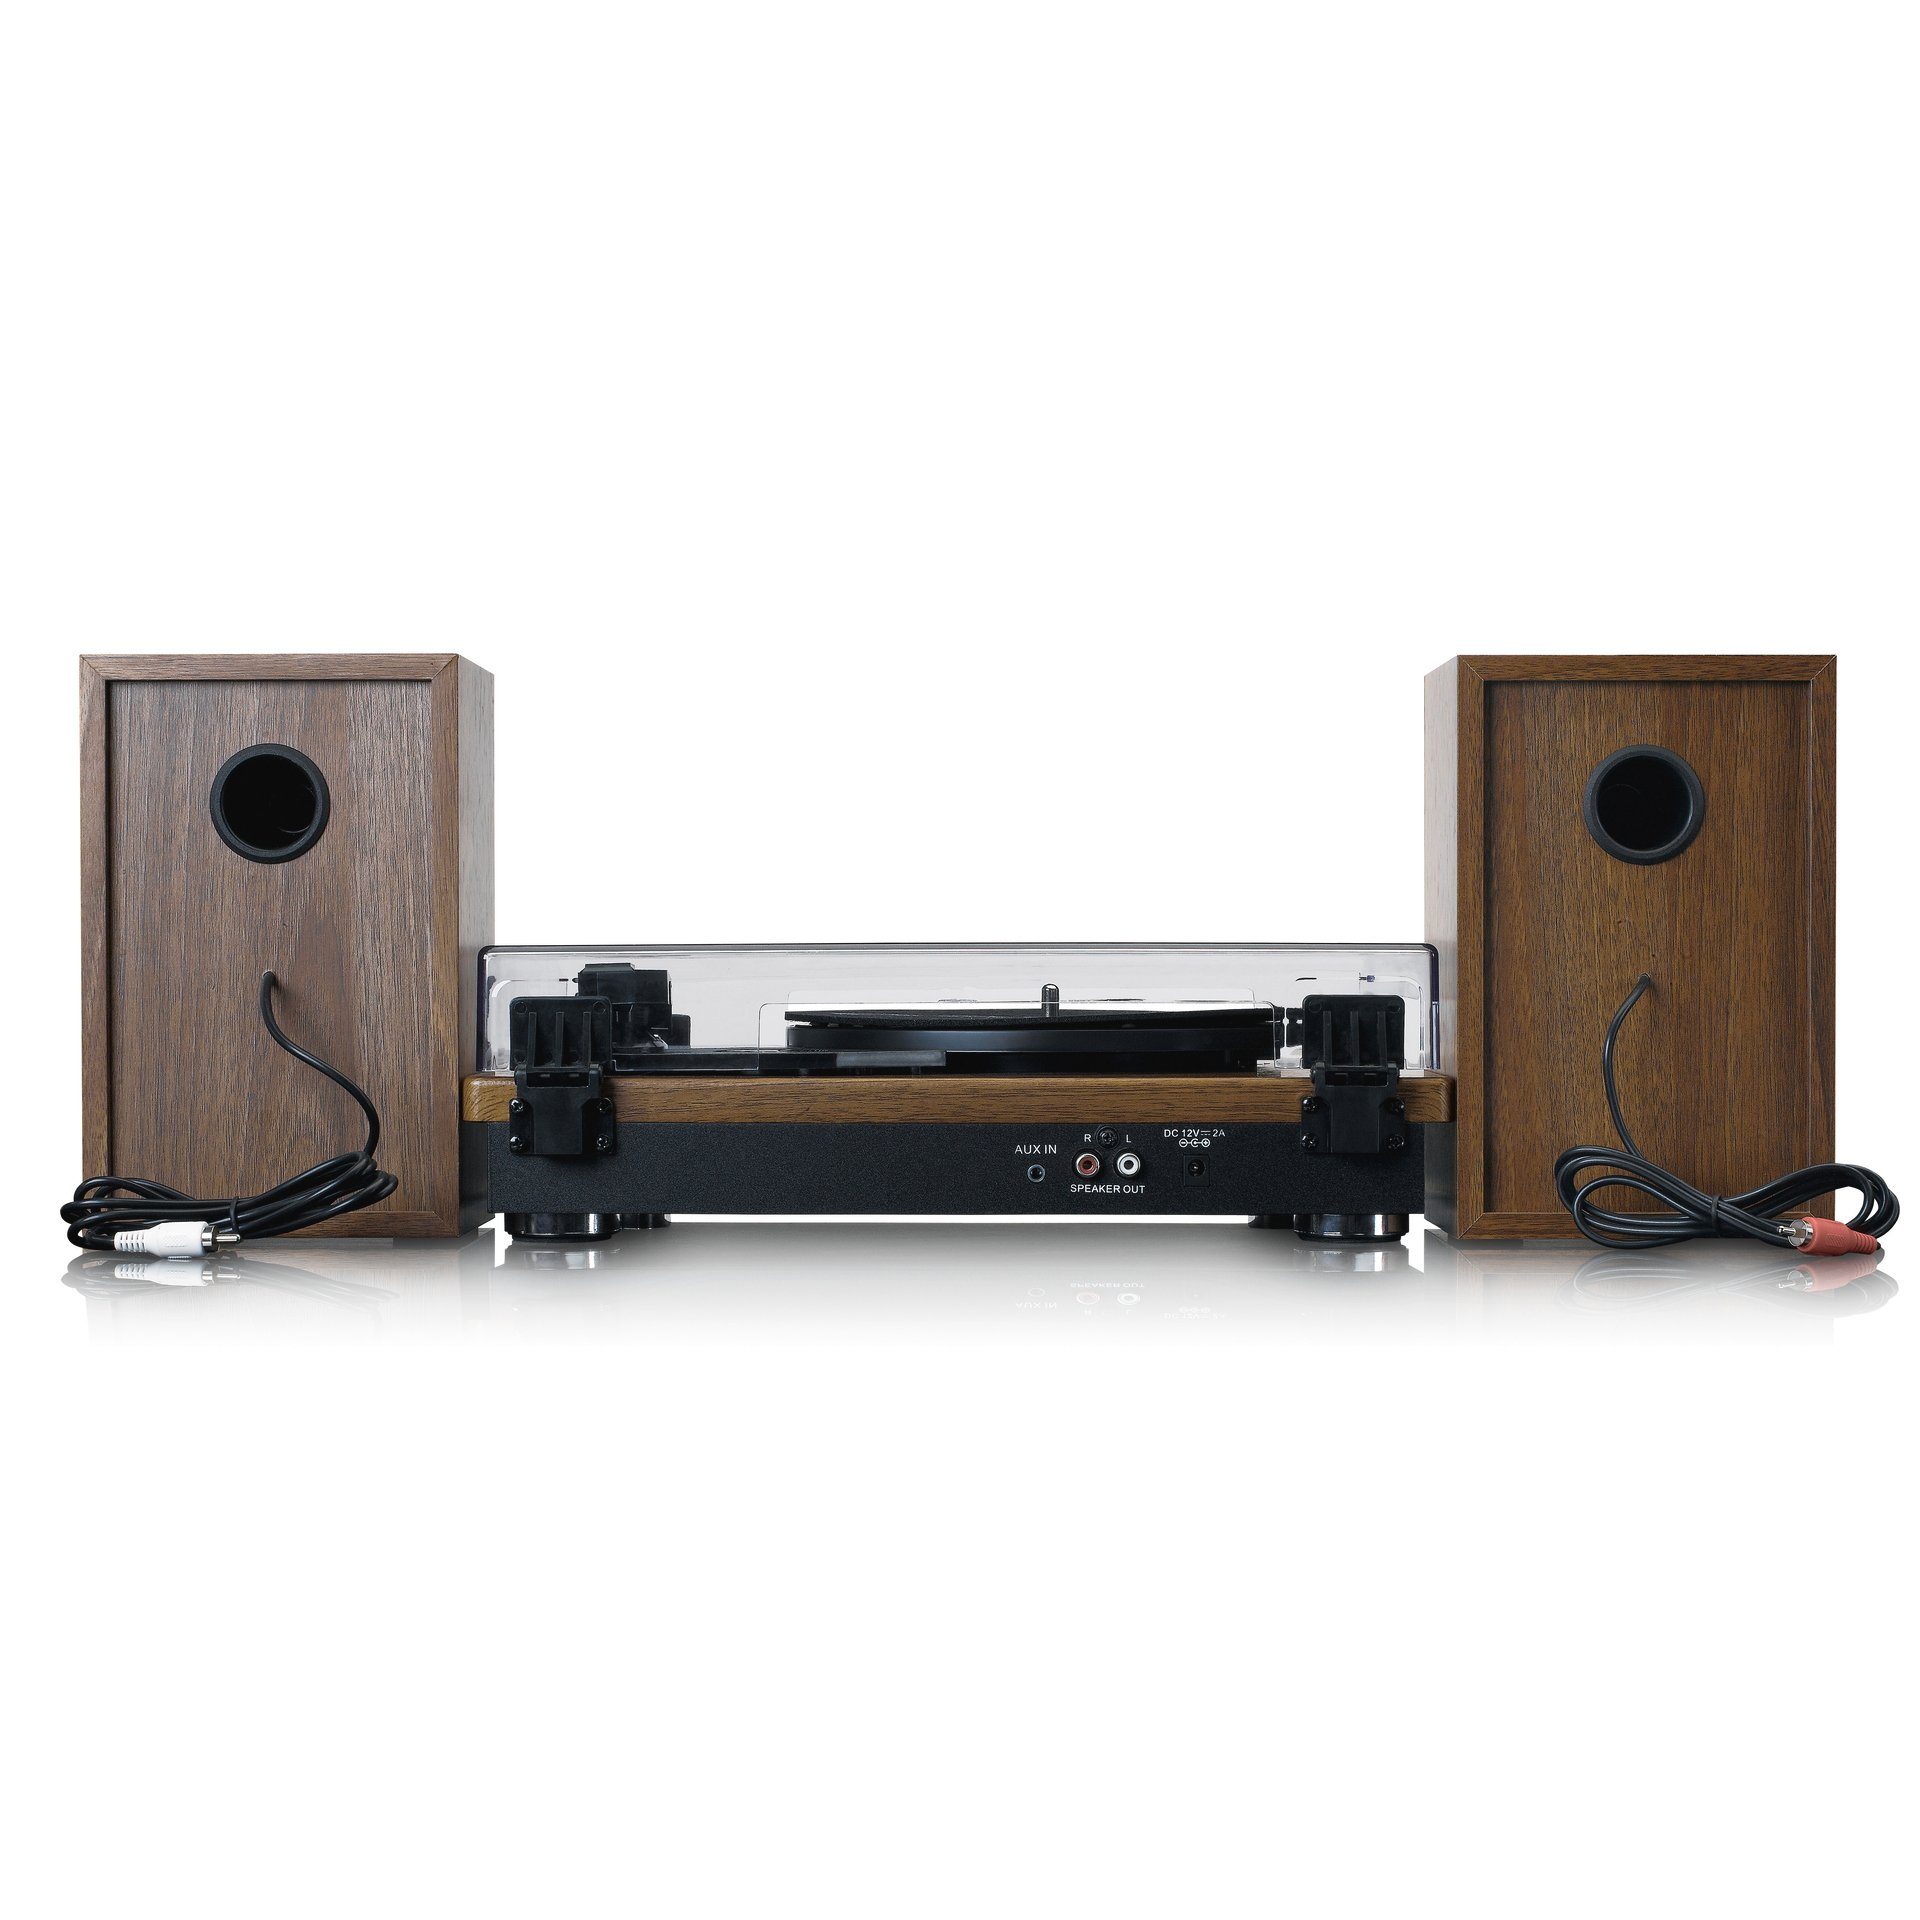 Lenco Plattenspieler mit Bluetooth 2 Lautsprechern und (Riemenantrieb) Holz externen Plattenspieler